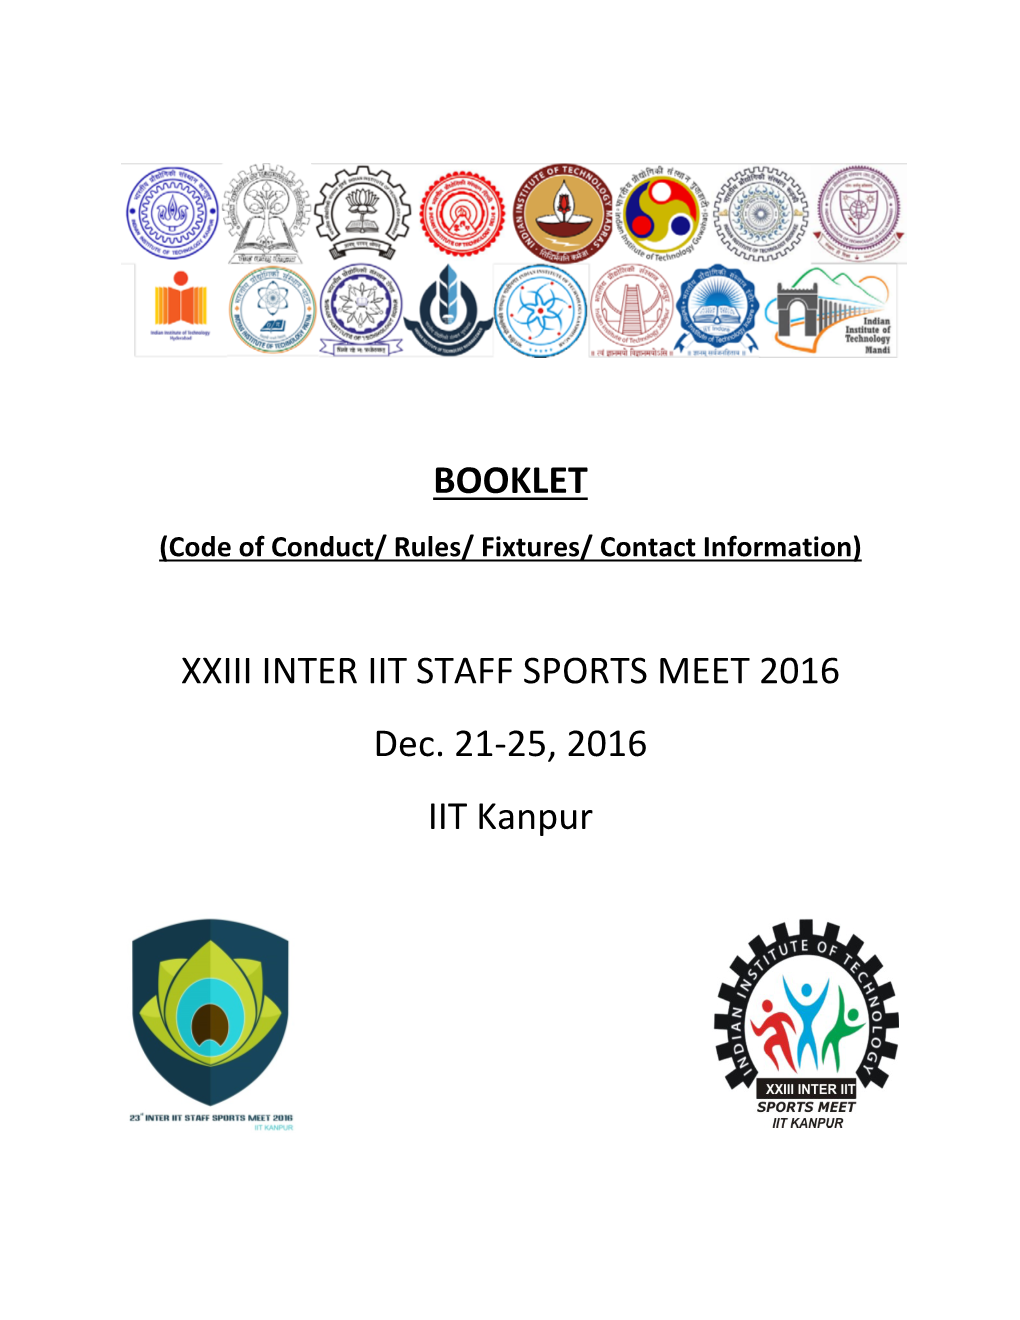 XXIII INTER IIT STAFF SPORTS MEET 2016, Dec. 21-25